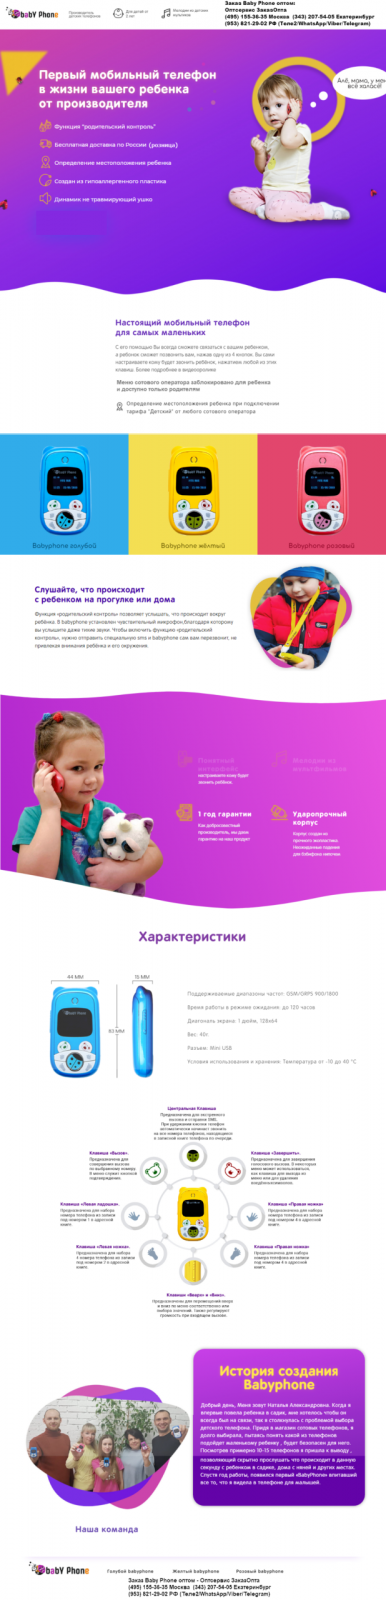 Мобильный телефон для ребенка Бэбифон (Babyphone)